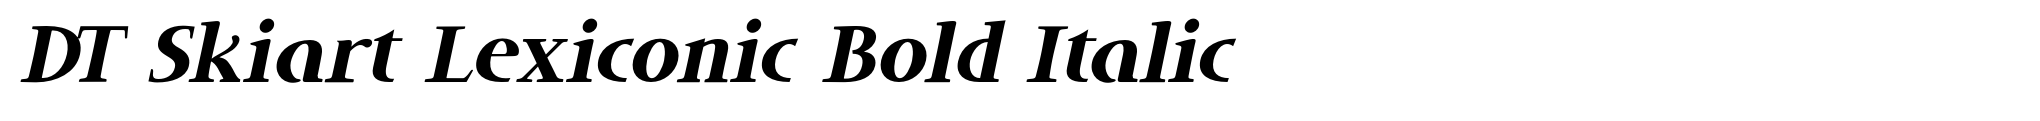 DT Skiart Lexiconic Bold Italic image